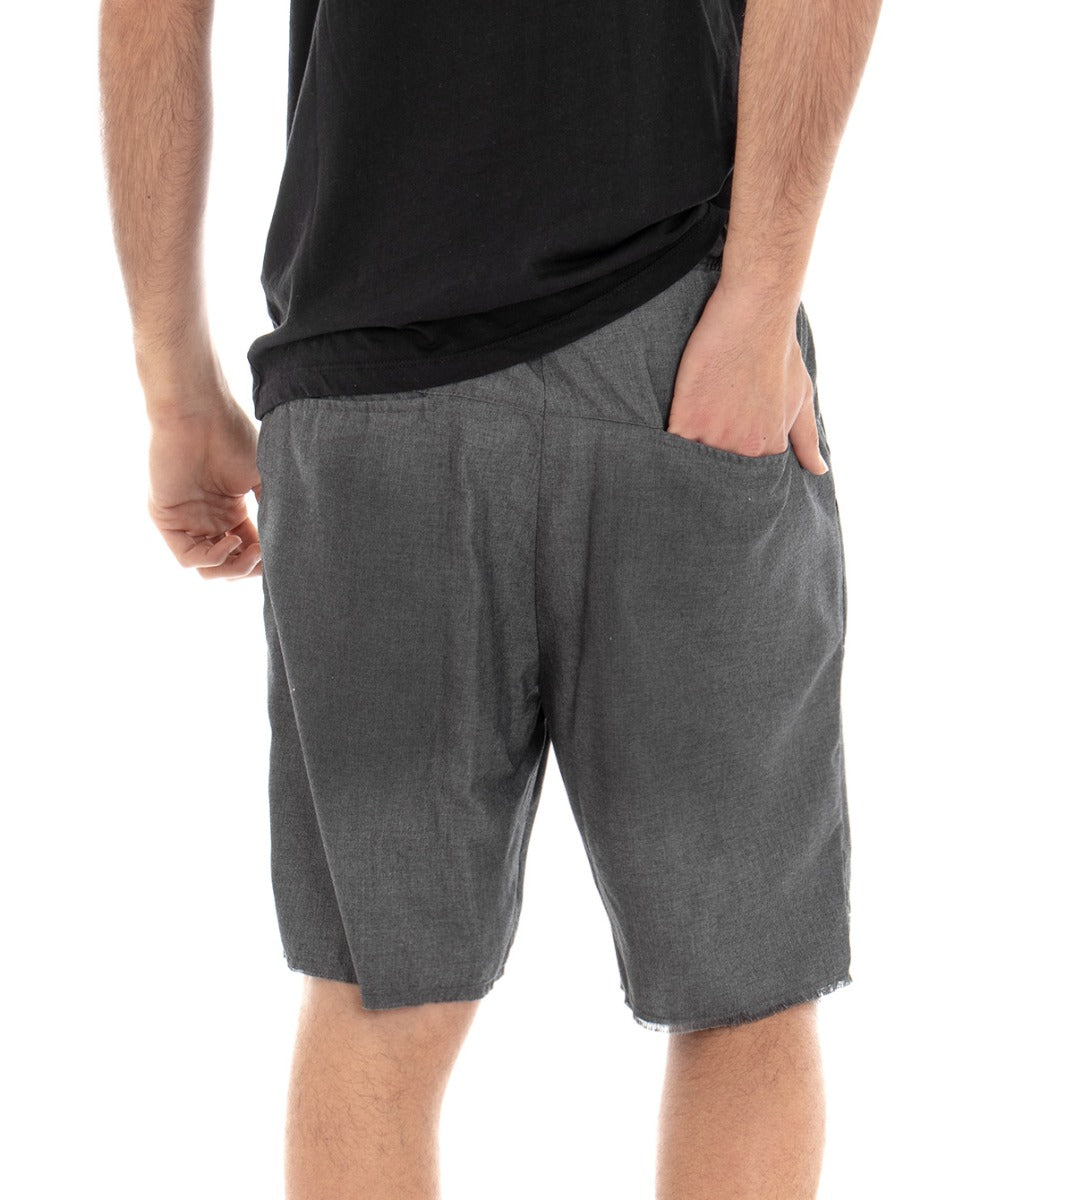 Bermuda Pantaloncino Uomo Tuta Elastico Grigio Scuro GIOSAL-PC1287A